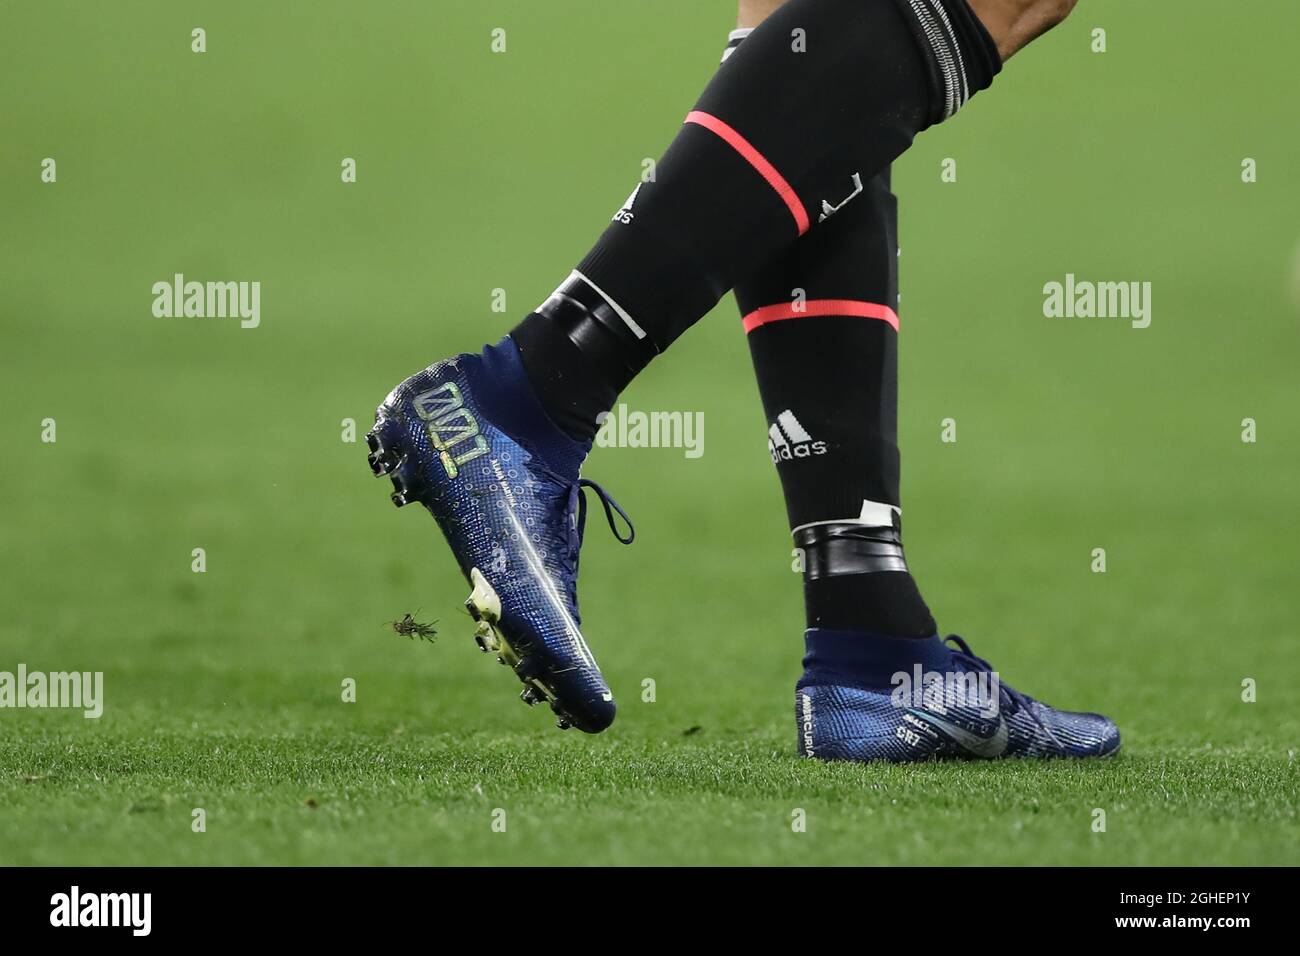 Cristiano Ronaldo de Juventus modela una nueva versión de botas de fútbol Mercurial durante el partido de la UEFA Champions League en el Stadium de Turín. Fecha la